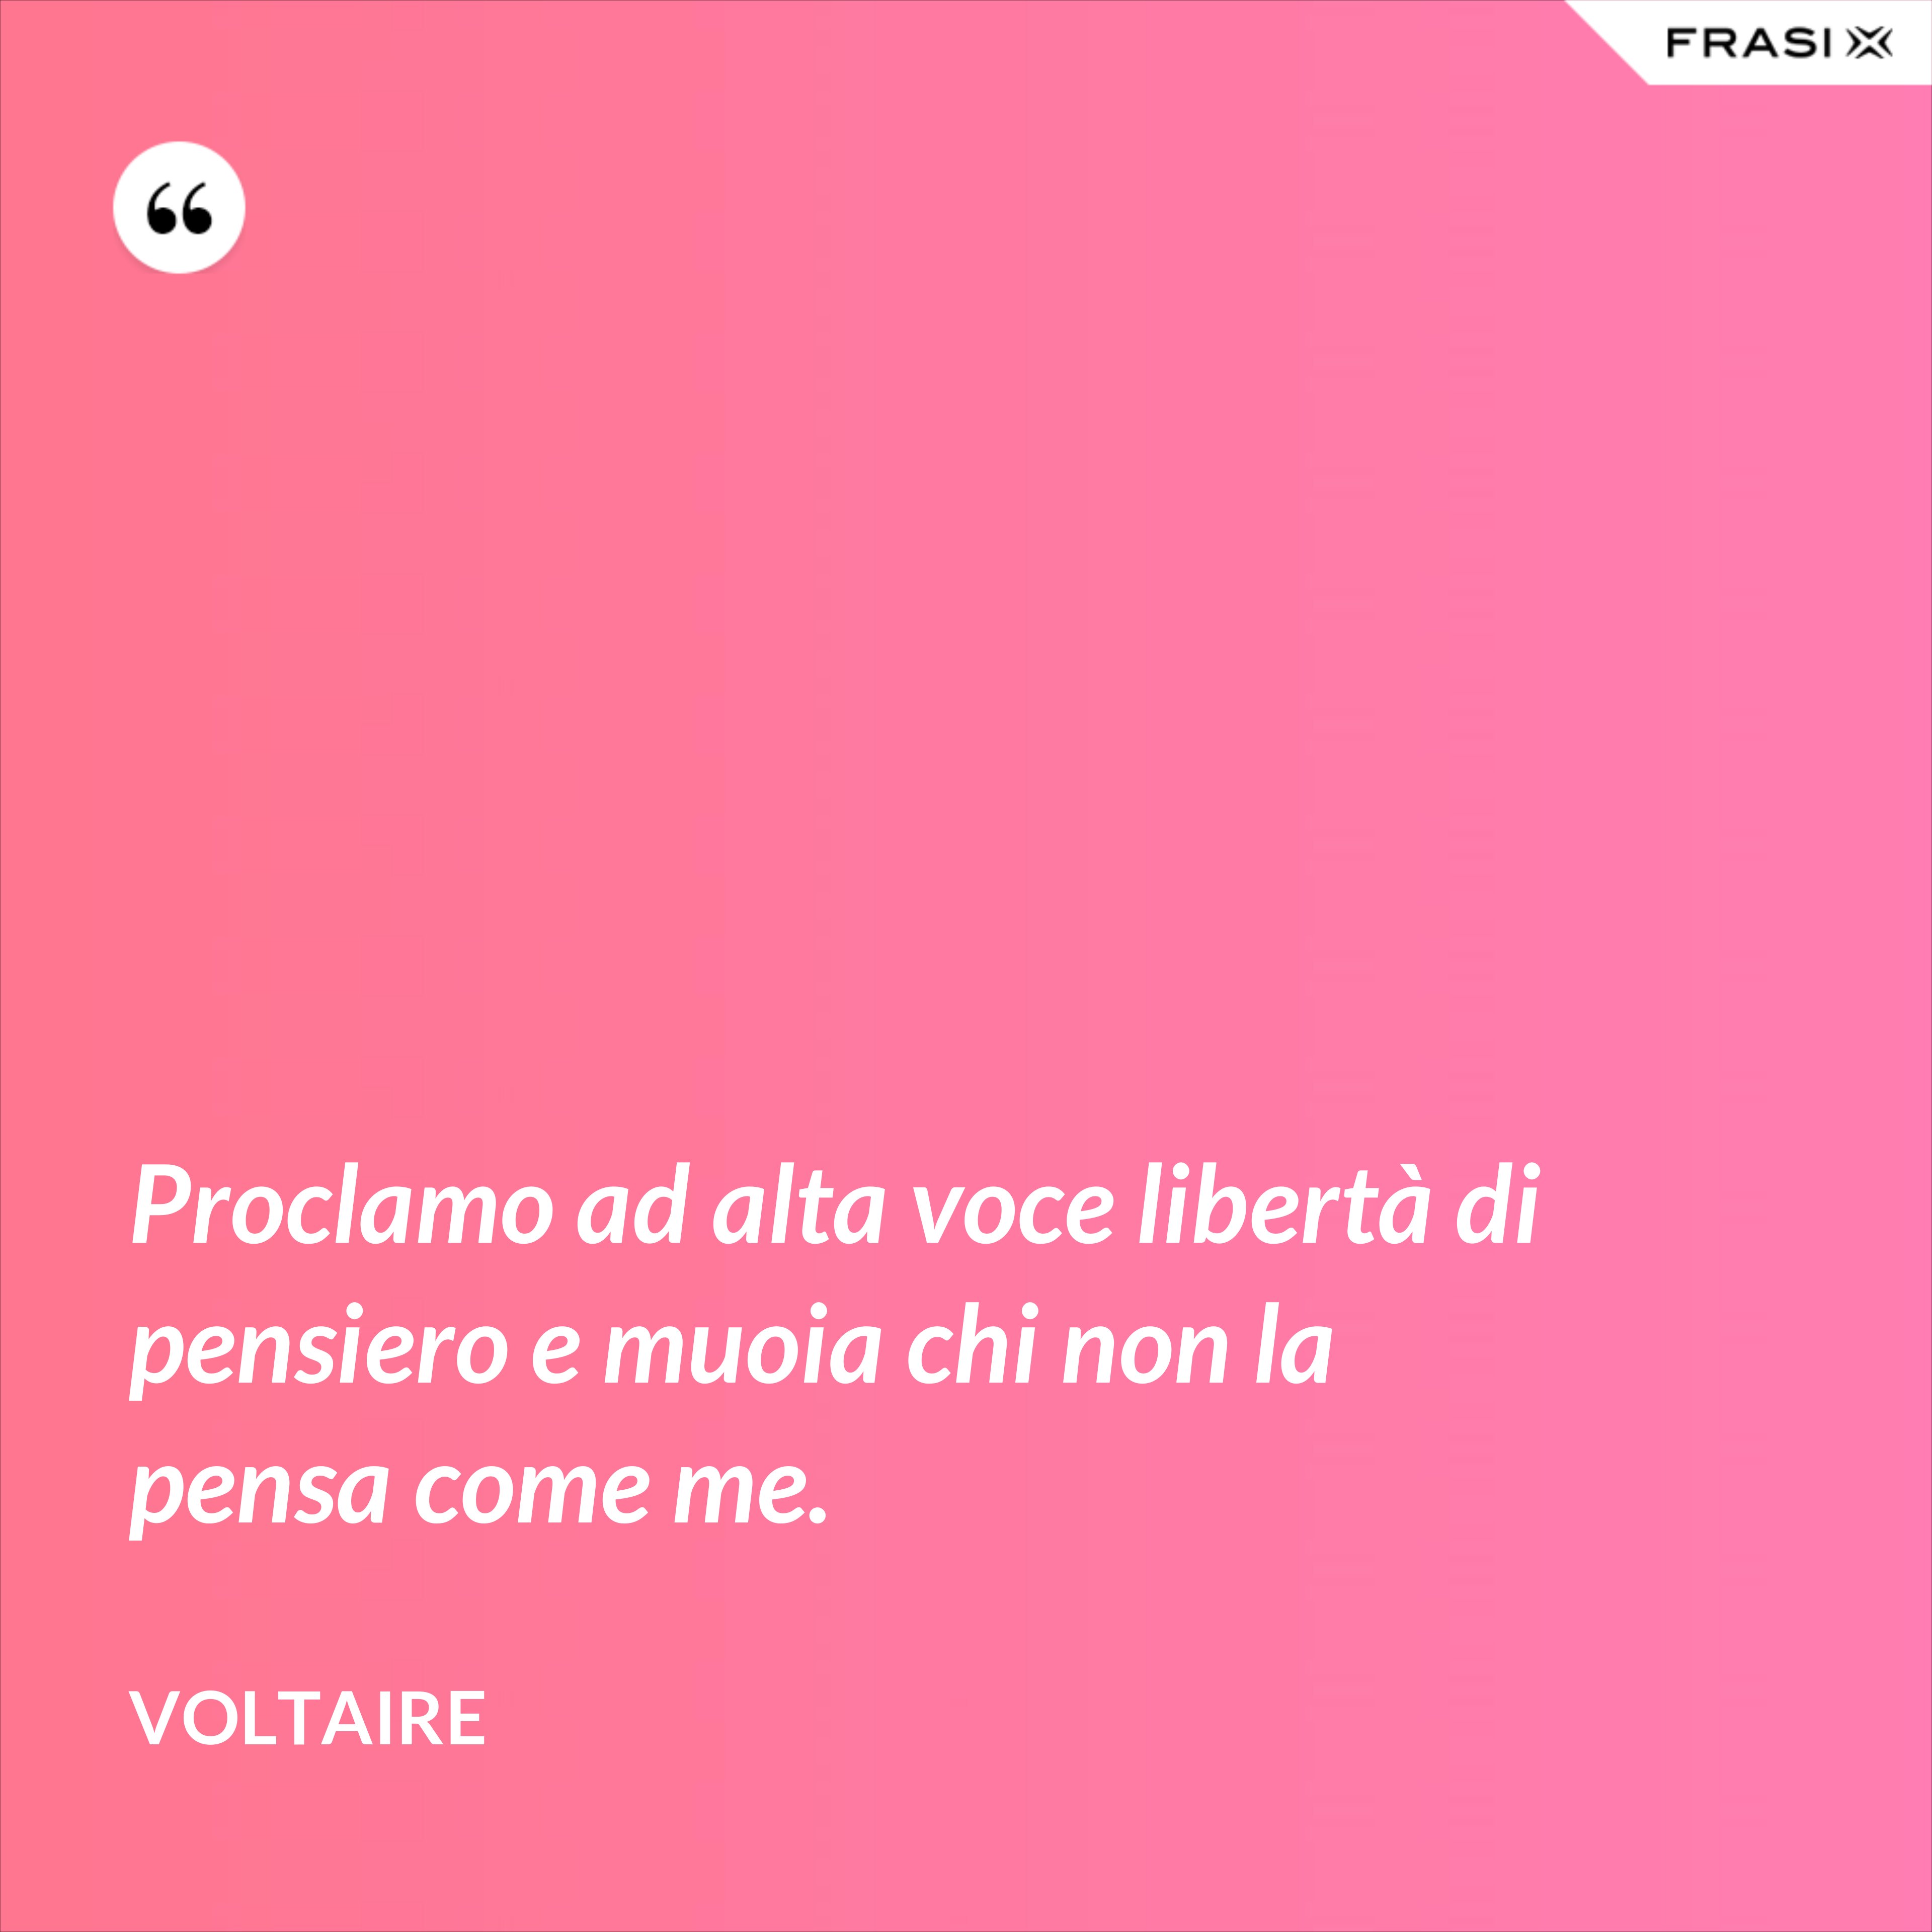 Proclamo ad alta voce libertà di pensiero e muoia chi non la pensa come me. - Voltaire